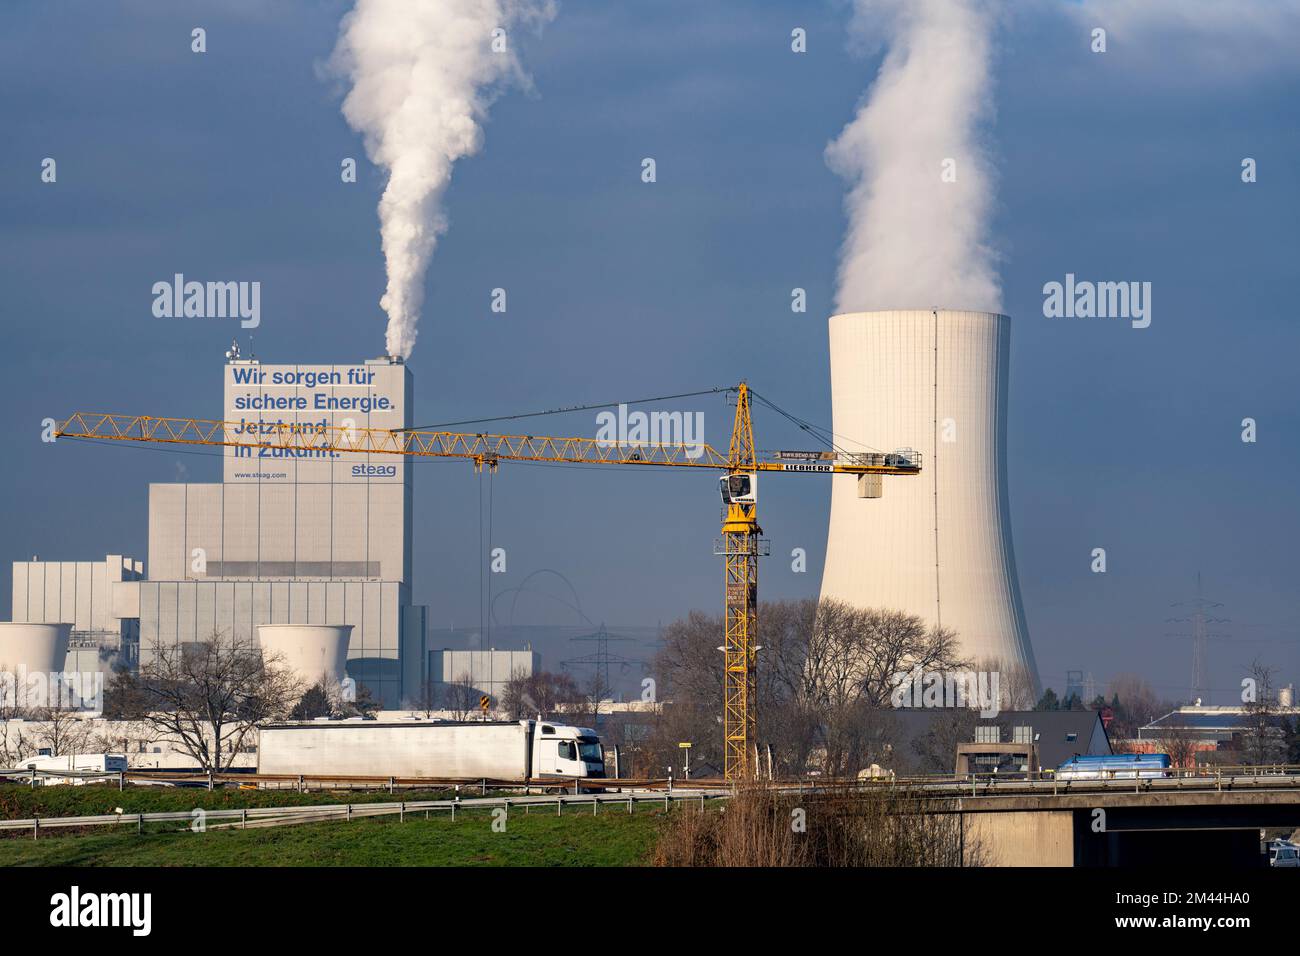 La STEAG combinó la planta de calor y energía en Herne-Baukau, central eléctrica de carbón duro, en el cruce de la autopista Herne, A42, A43, construcción de la autopista Foto de stock